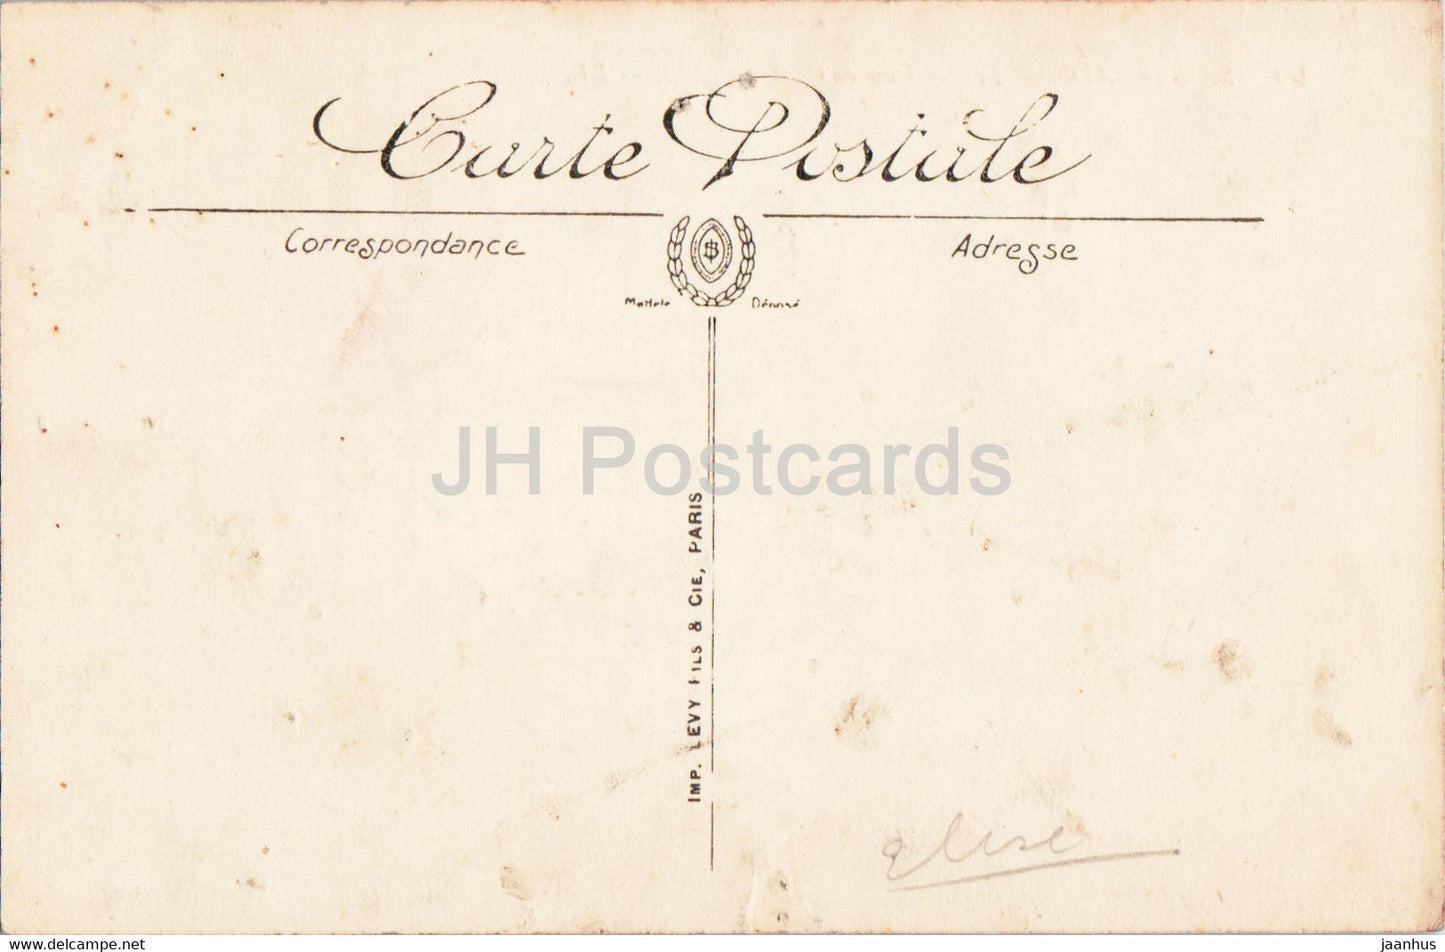 Saint Malo - Le Tombeau de Chateaubriand - 99 - carte postale ancienne - France - inutilisée